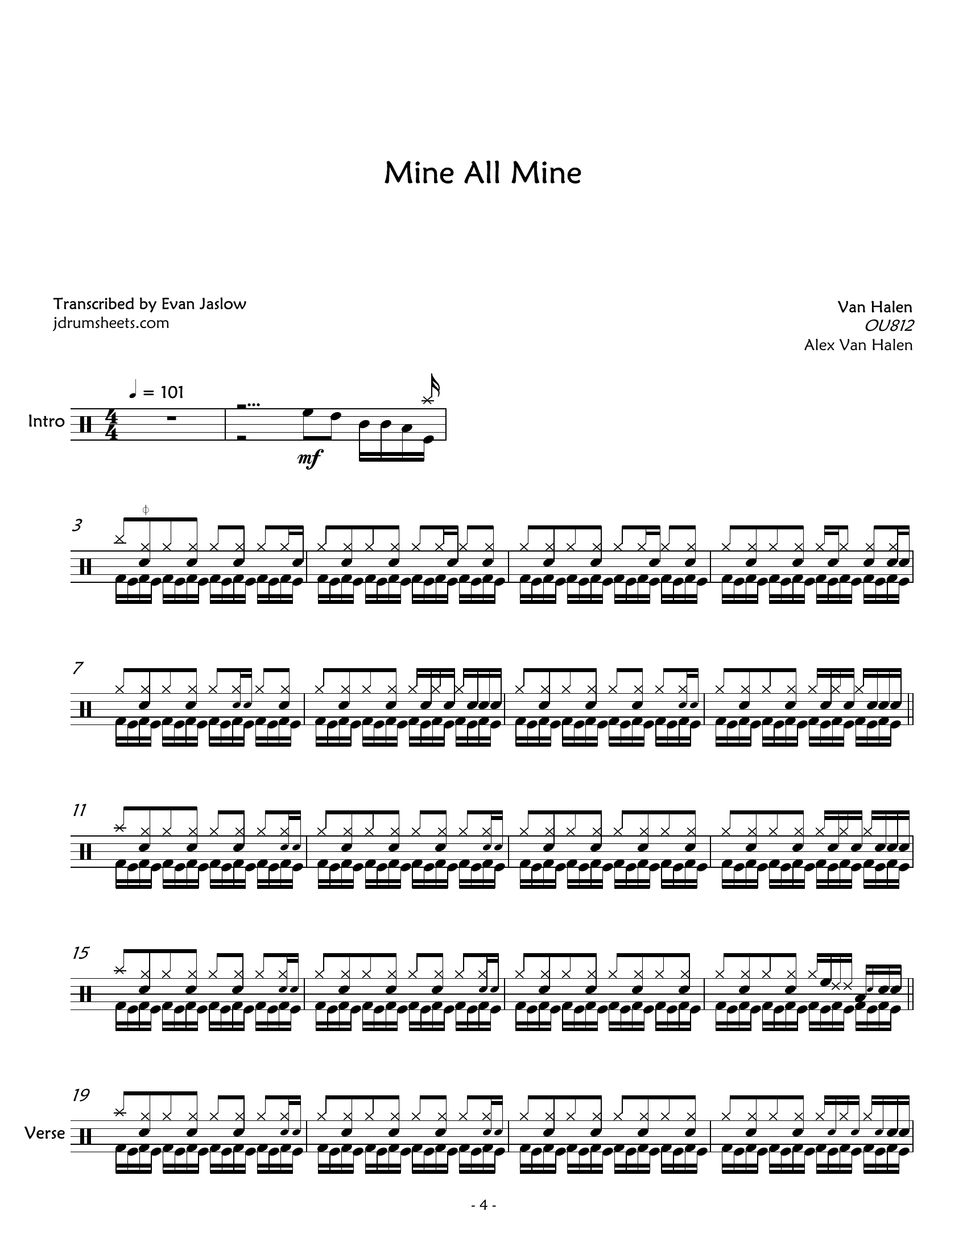 Van Halen - Mine All Mine by Evan Aria Serenity